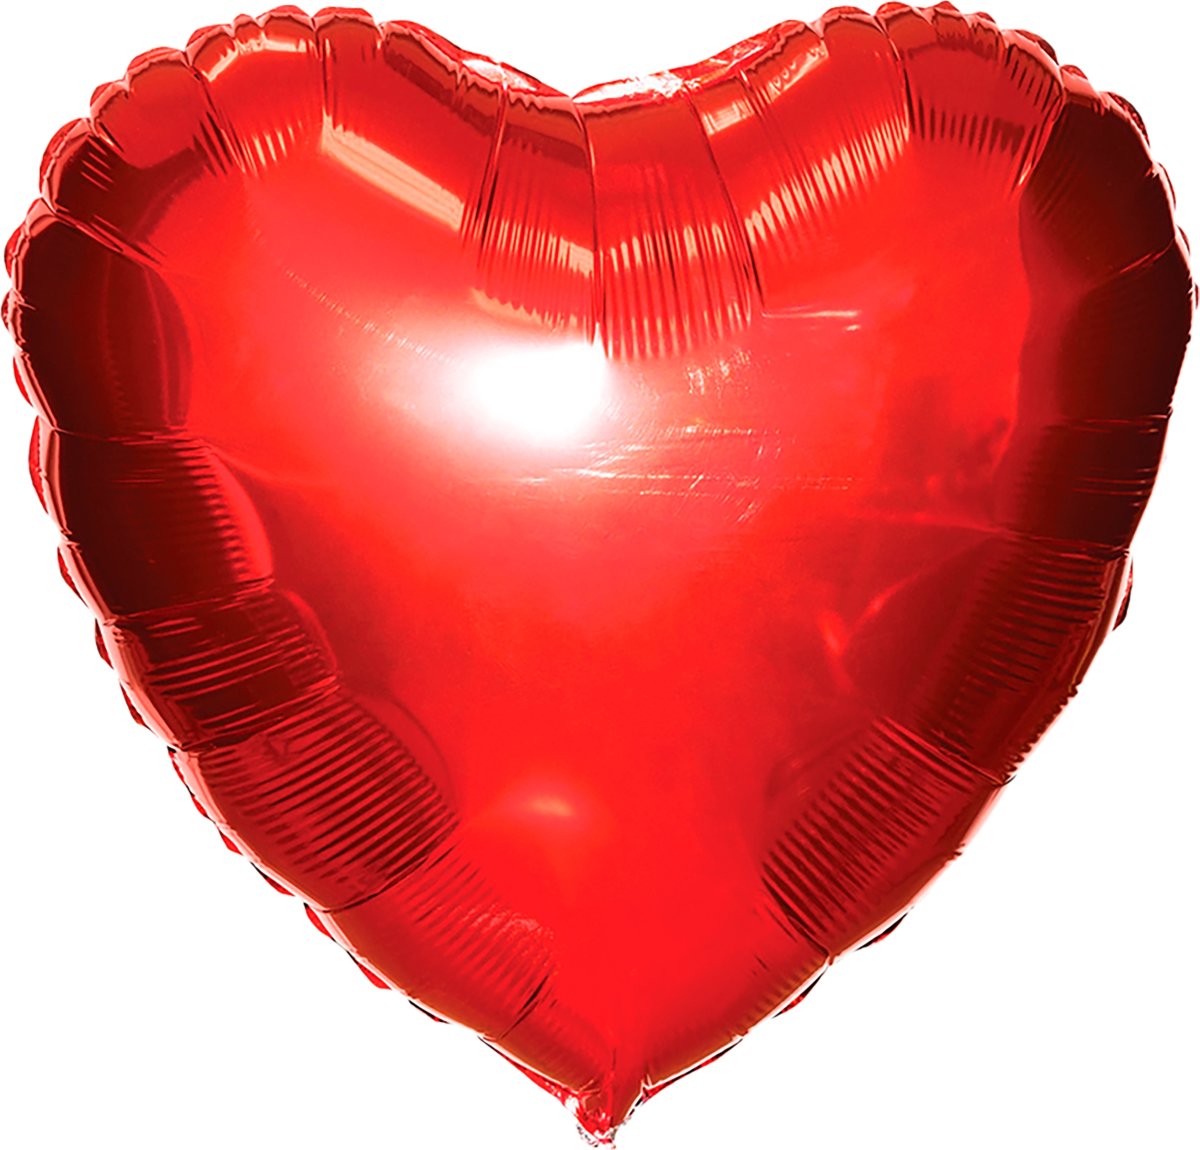 Ballong, folie, rött hjärta, 35 cm, 1 st.